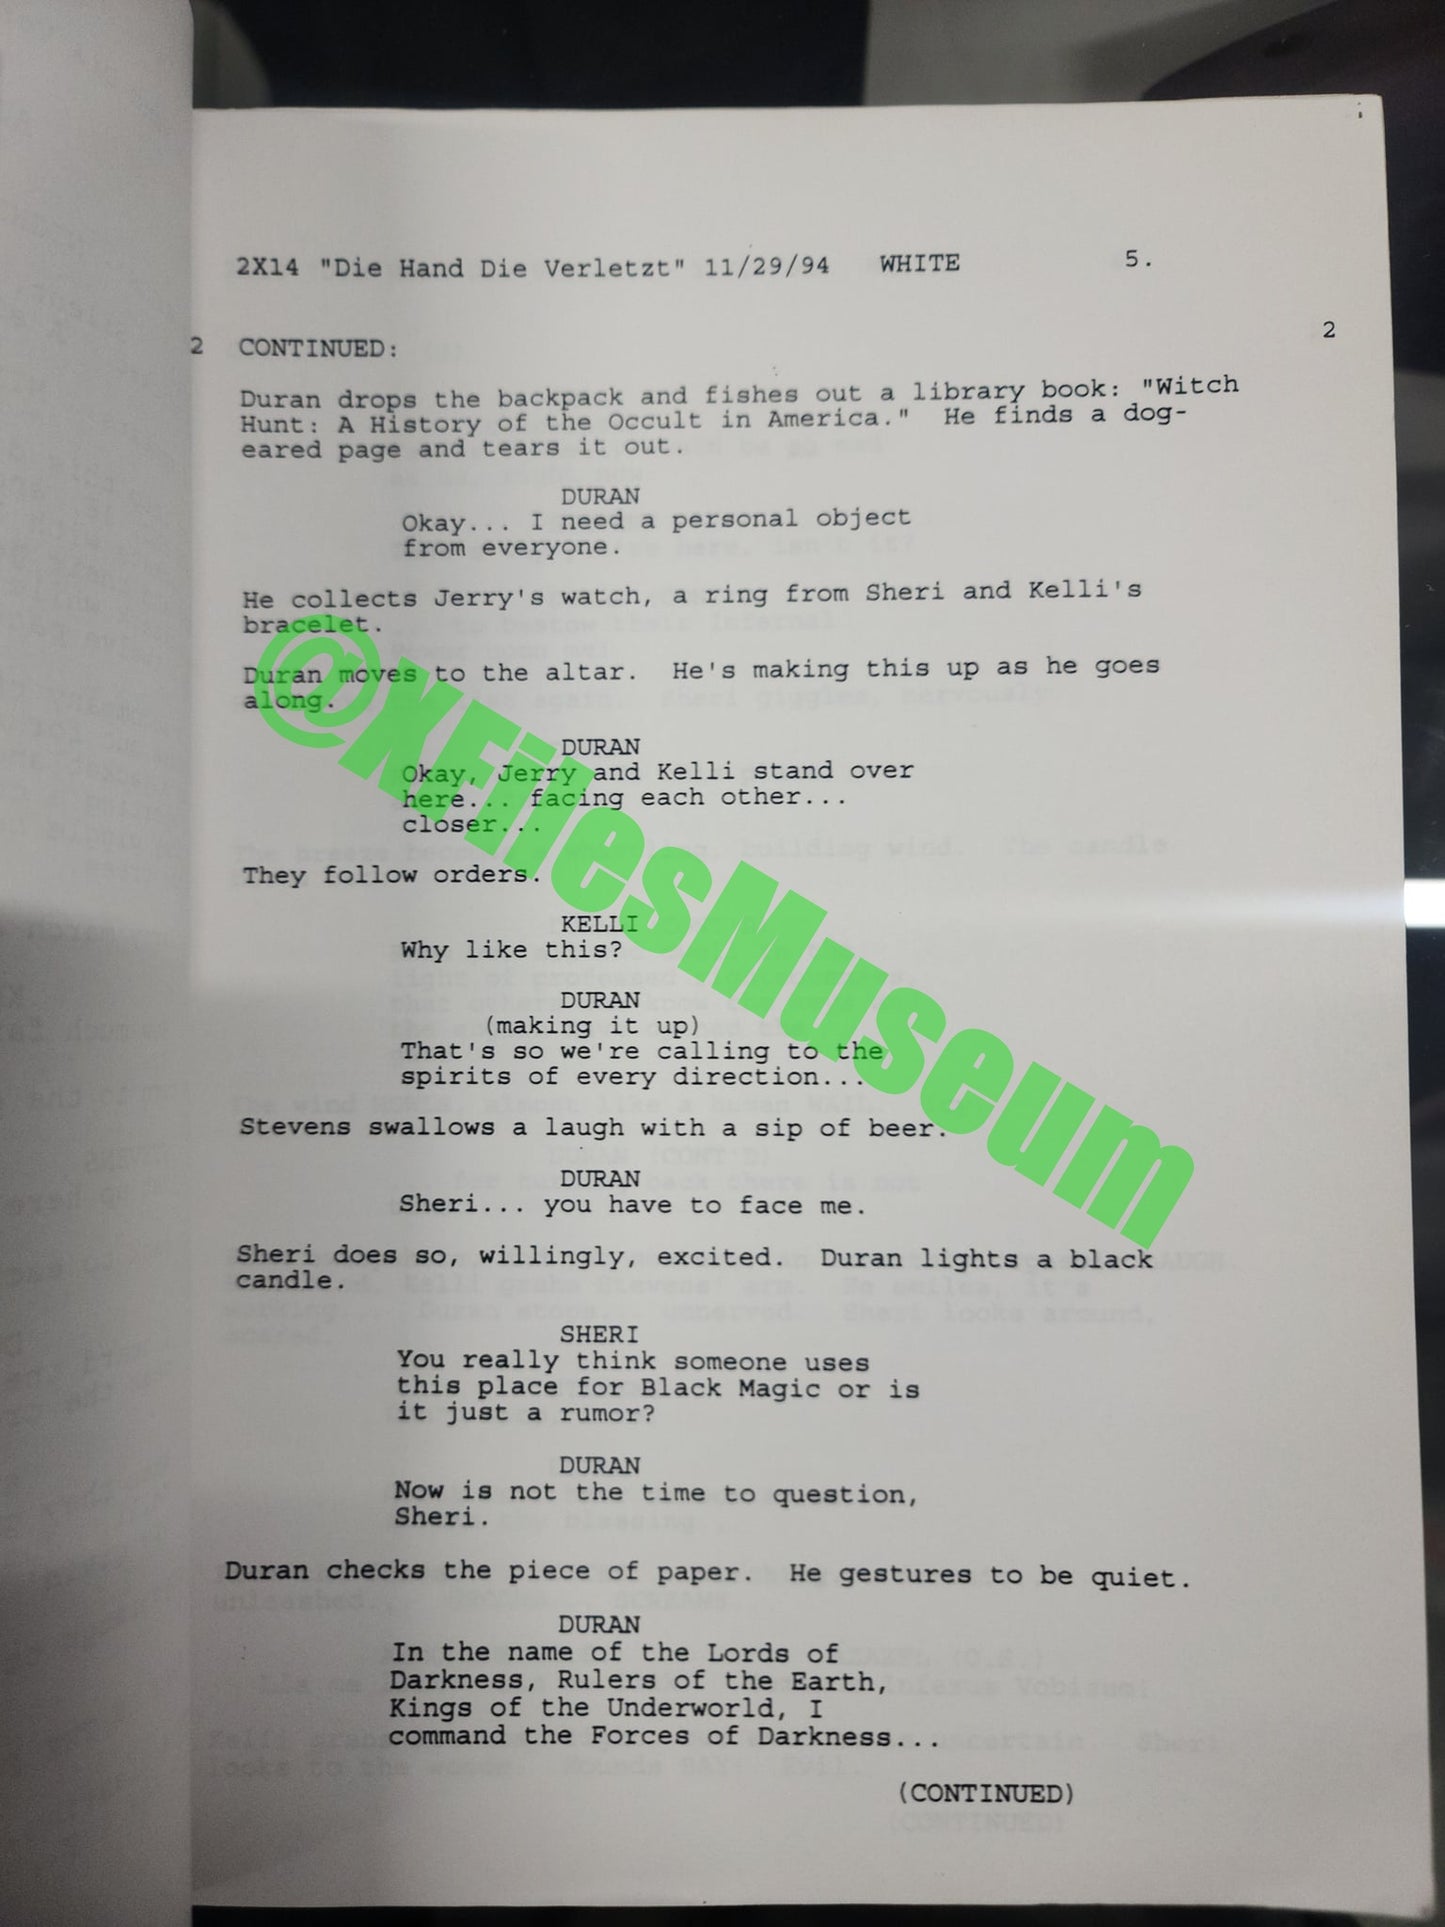 X Files Script -Episode "DIE HAND DIE" - Not Production Used